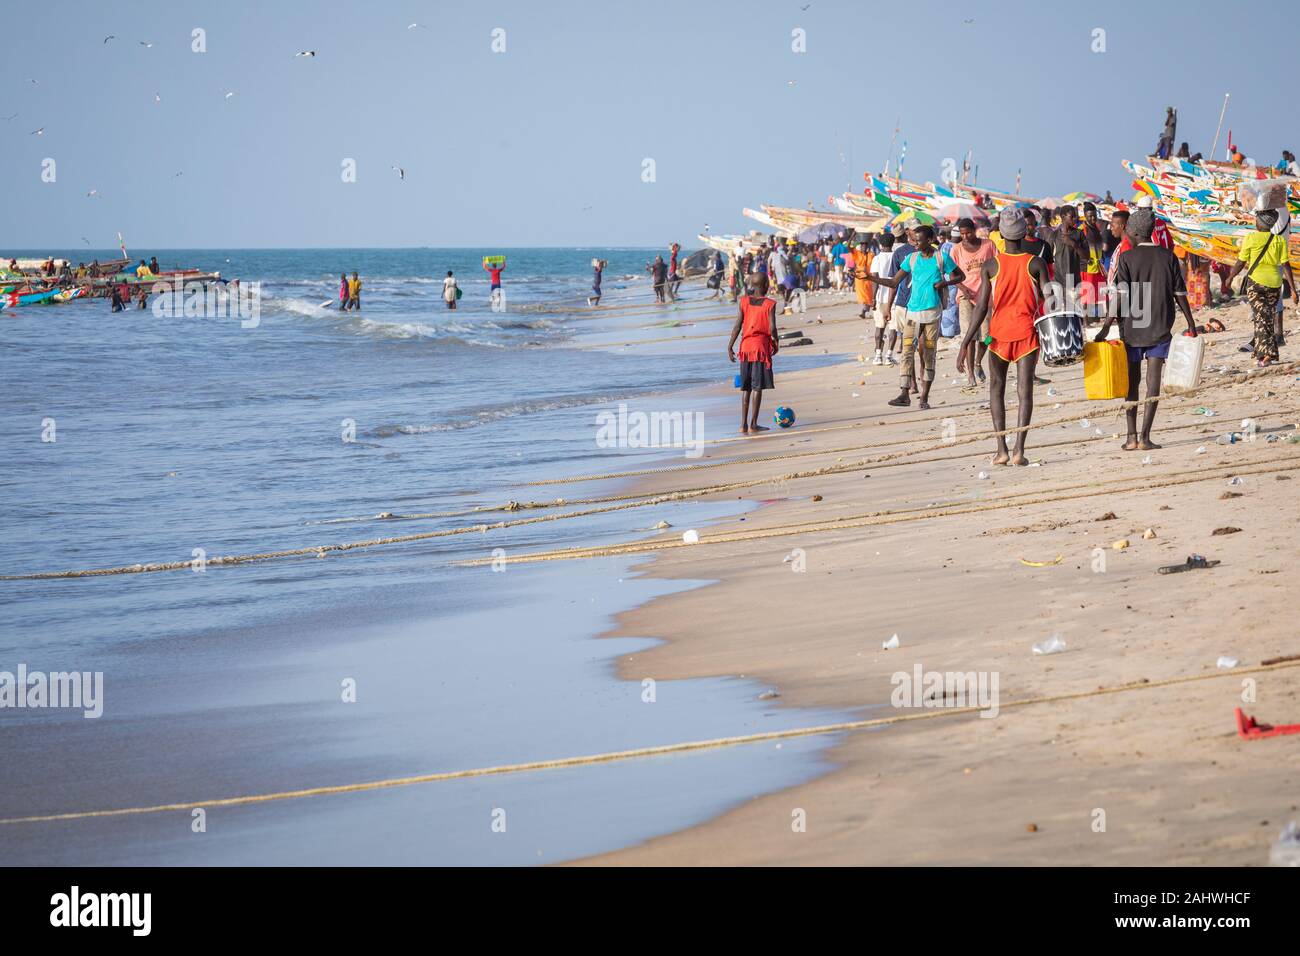 TANJI, Gambia - November 21, 2019: Szene mit Männern und Frauen, die Fische aus der Boote am Strand auf Tanji, Gambia, Westafrika. Stockfoto